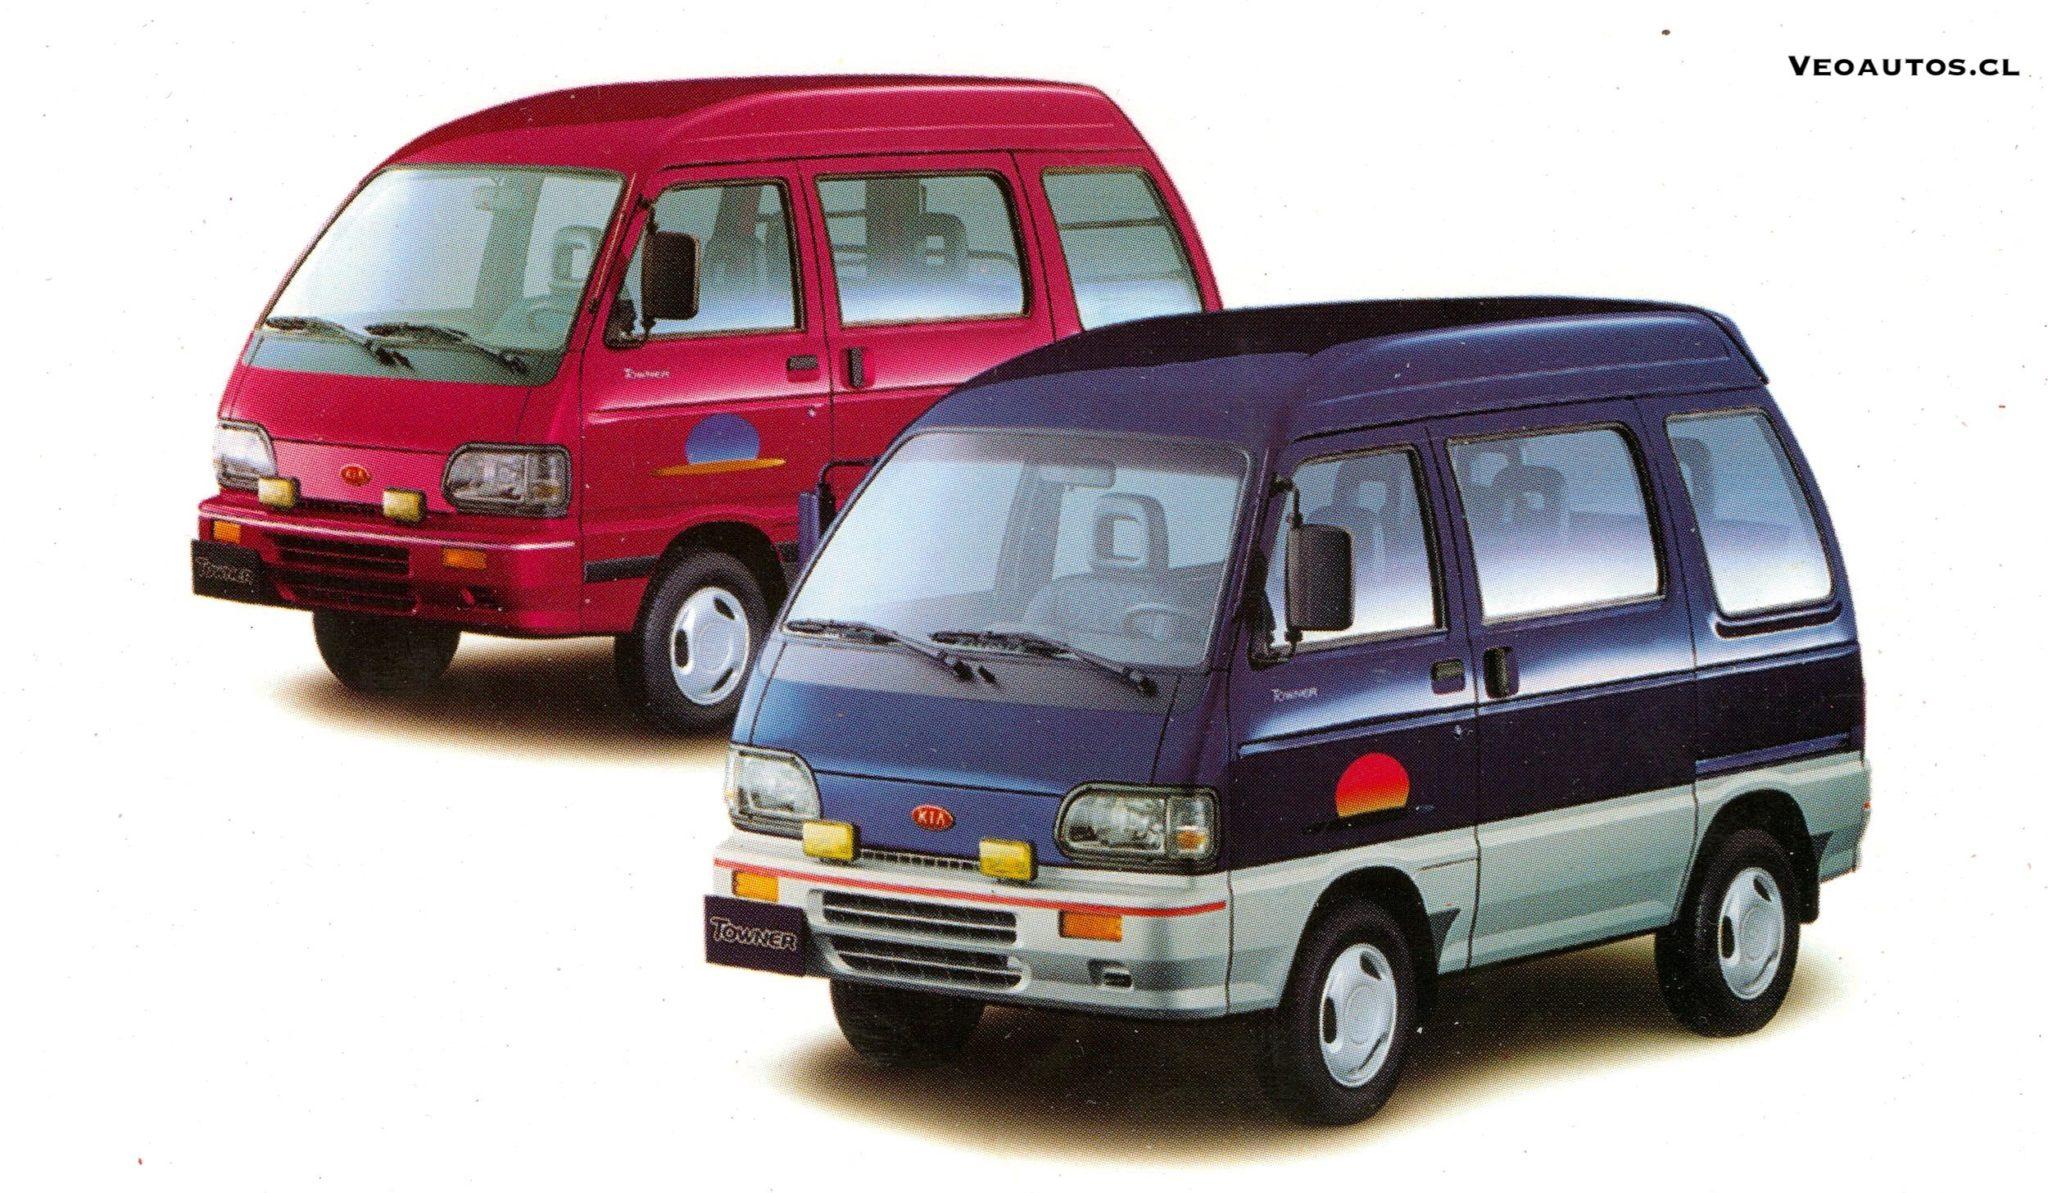 van有引力 的想法: 上世纪90年代起亚towner微型面包车 